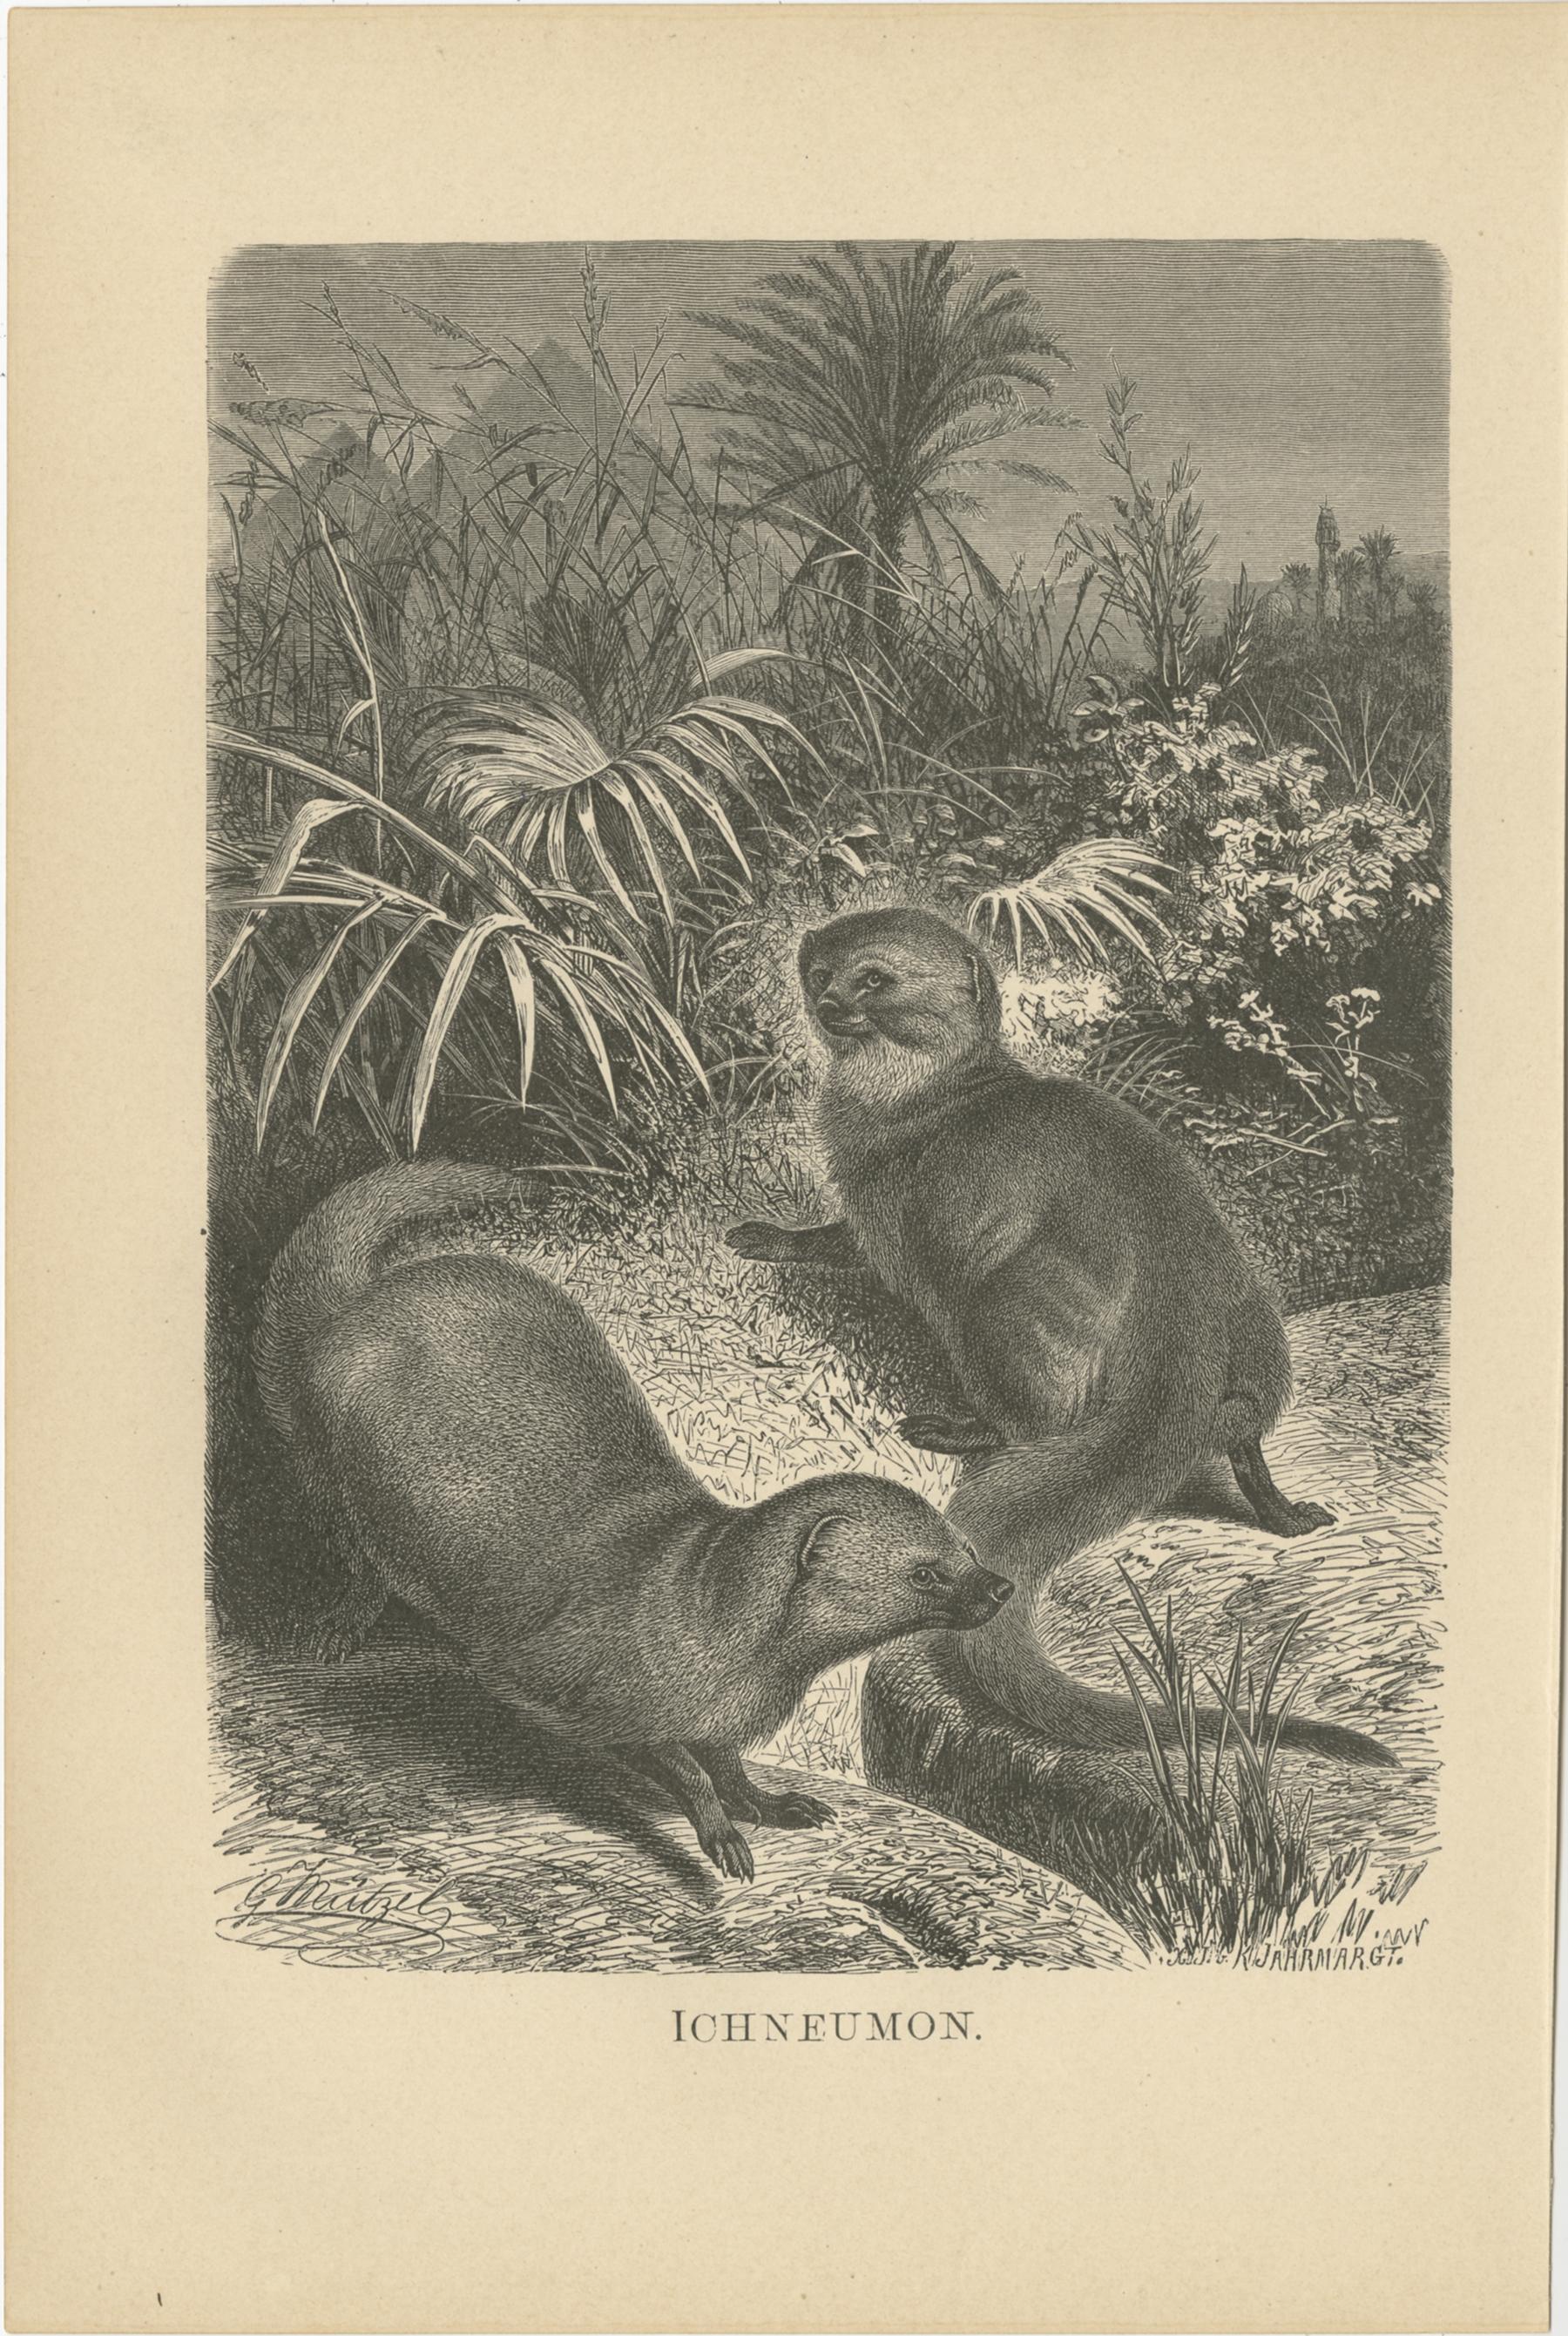 Set of three antique prints including:

1) Ichneumeon - Egyptian mongoose
2) Löwe - Lion
3) Wüstenluchs - Caracal

These prints originate from 'Brehms Tierleben: allgemeine Kunde des Tierreichs'. Published circa 1890.